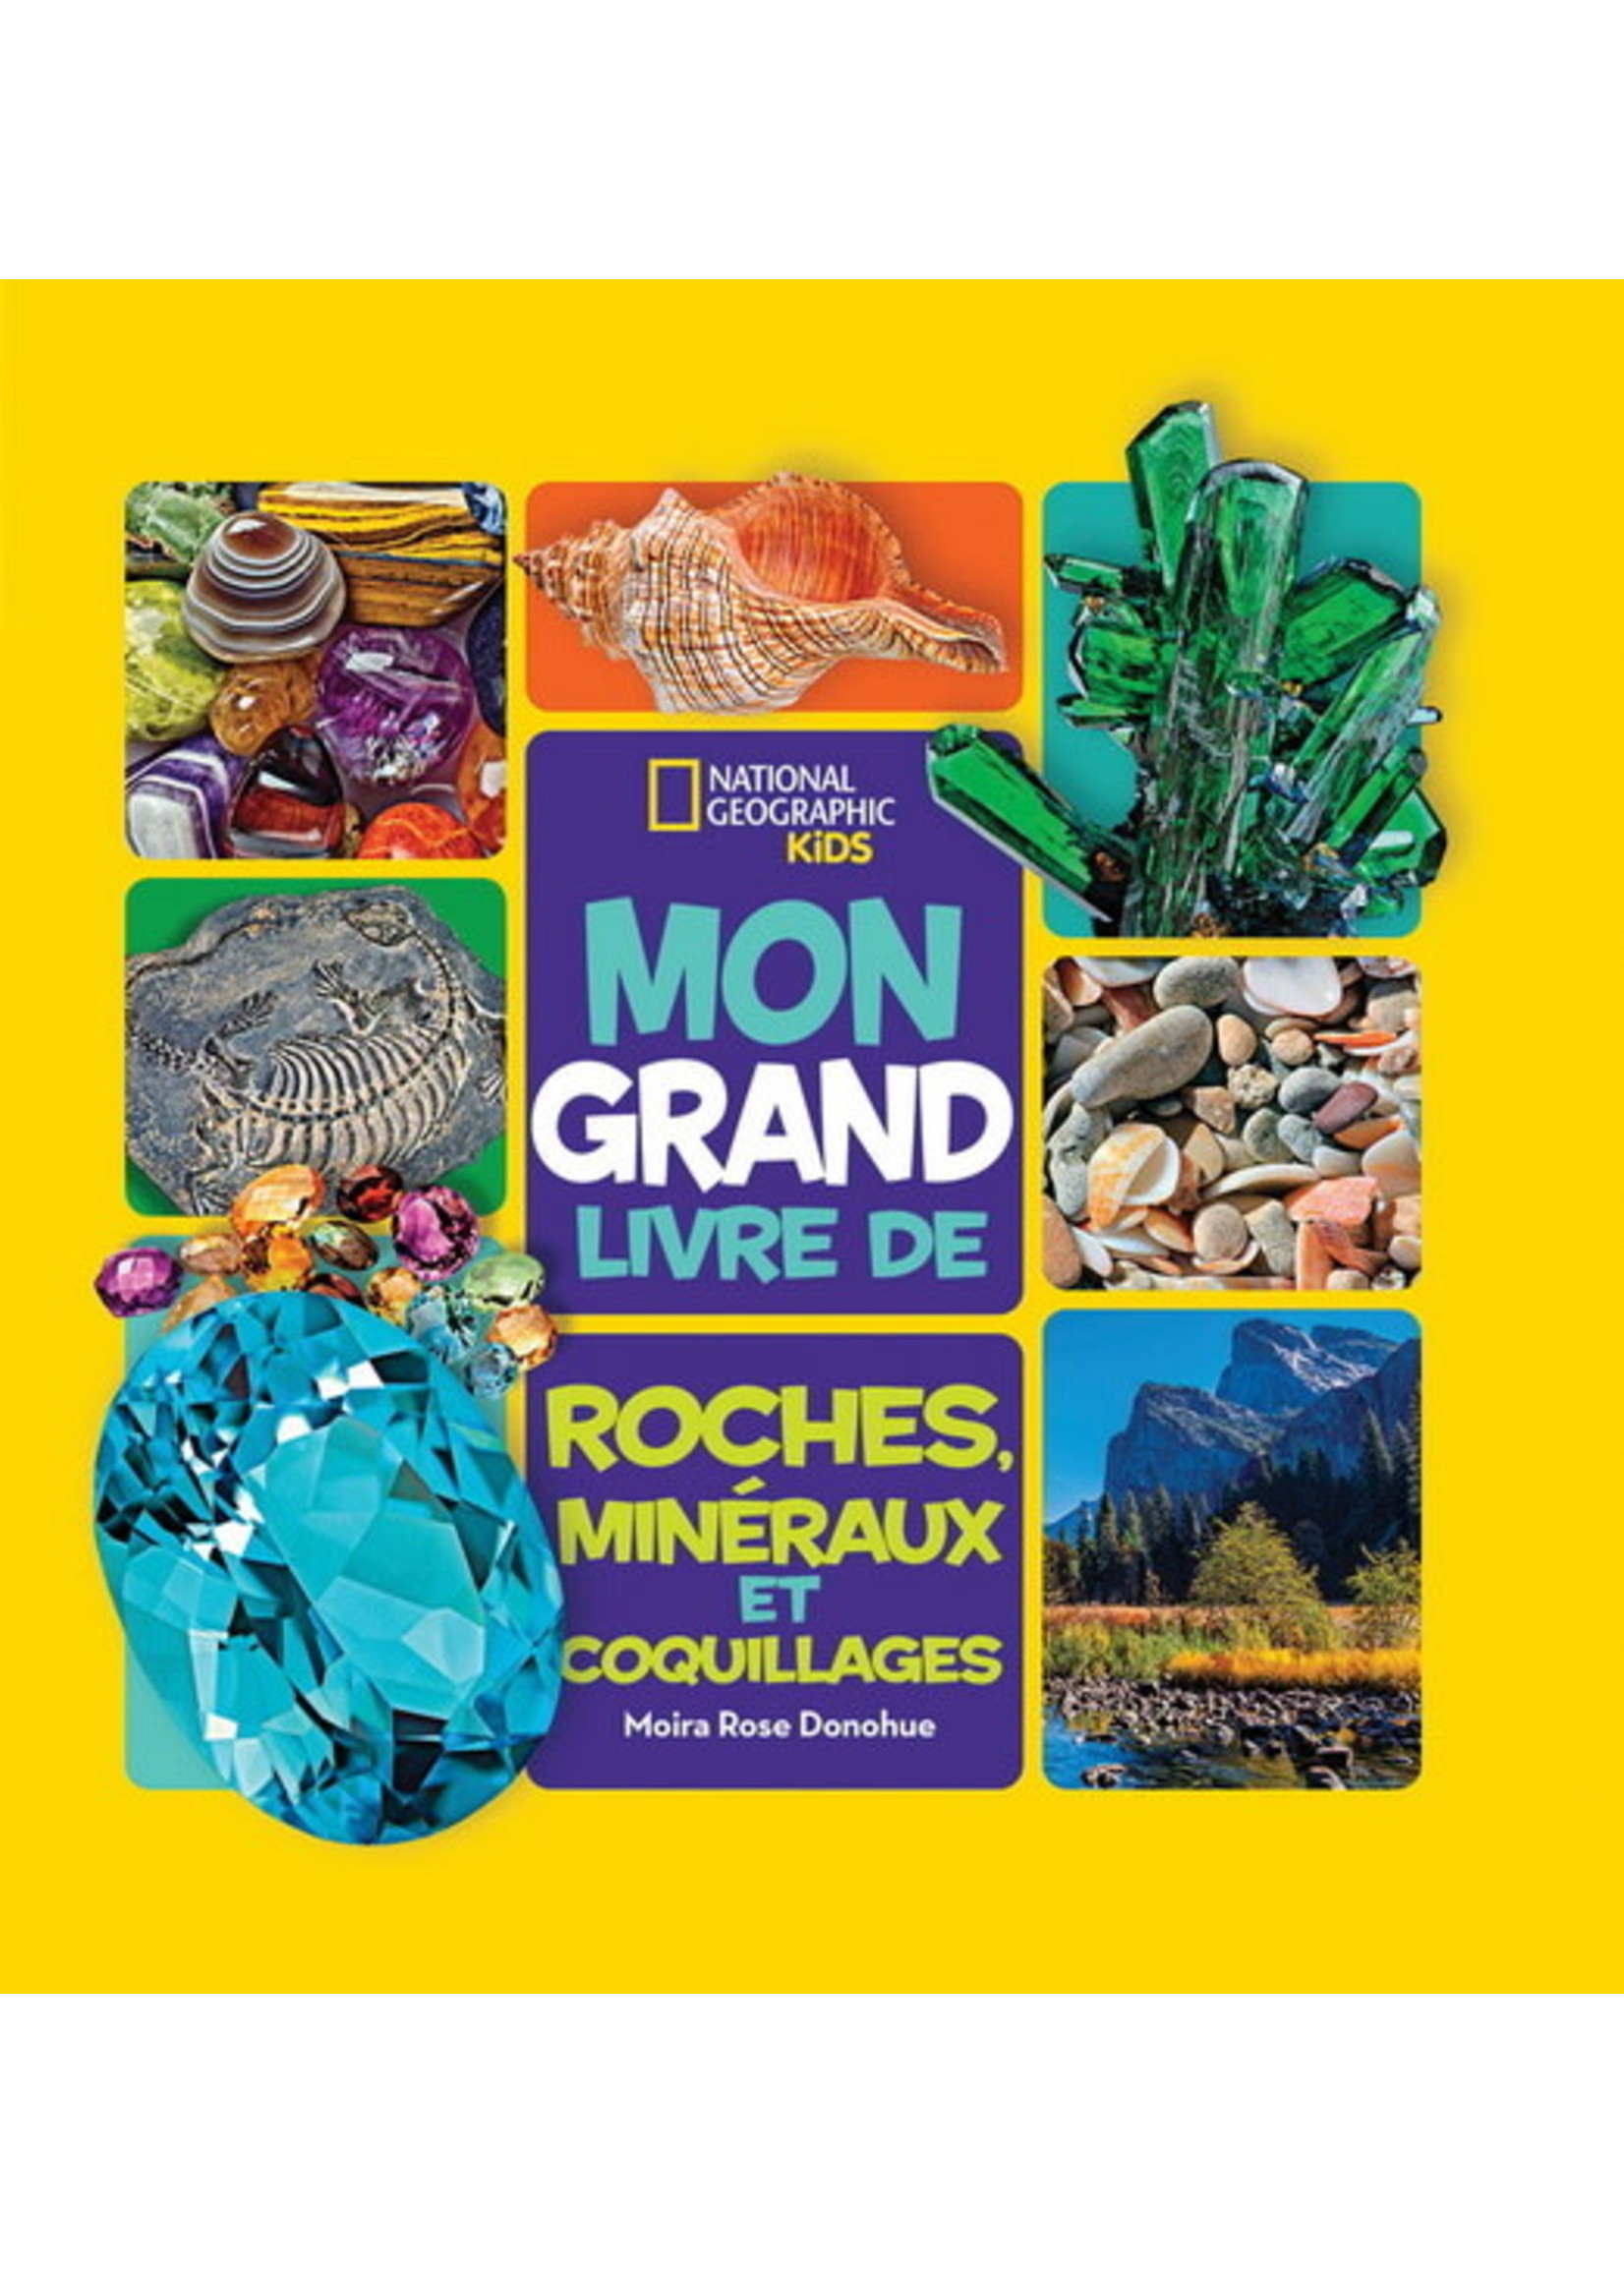 Mon grand livre de roches, minéraux et coquillages De Moira Rose Donohue